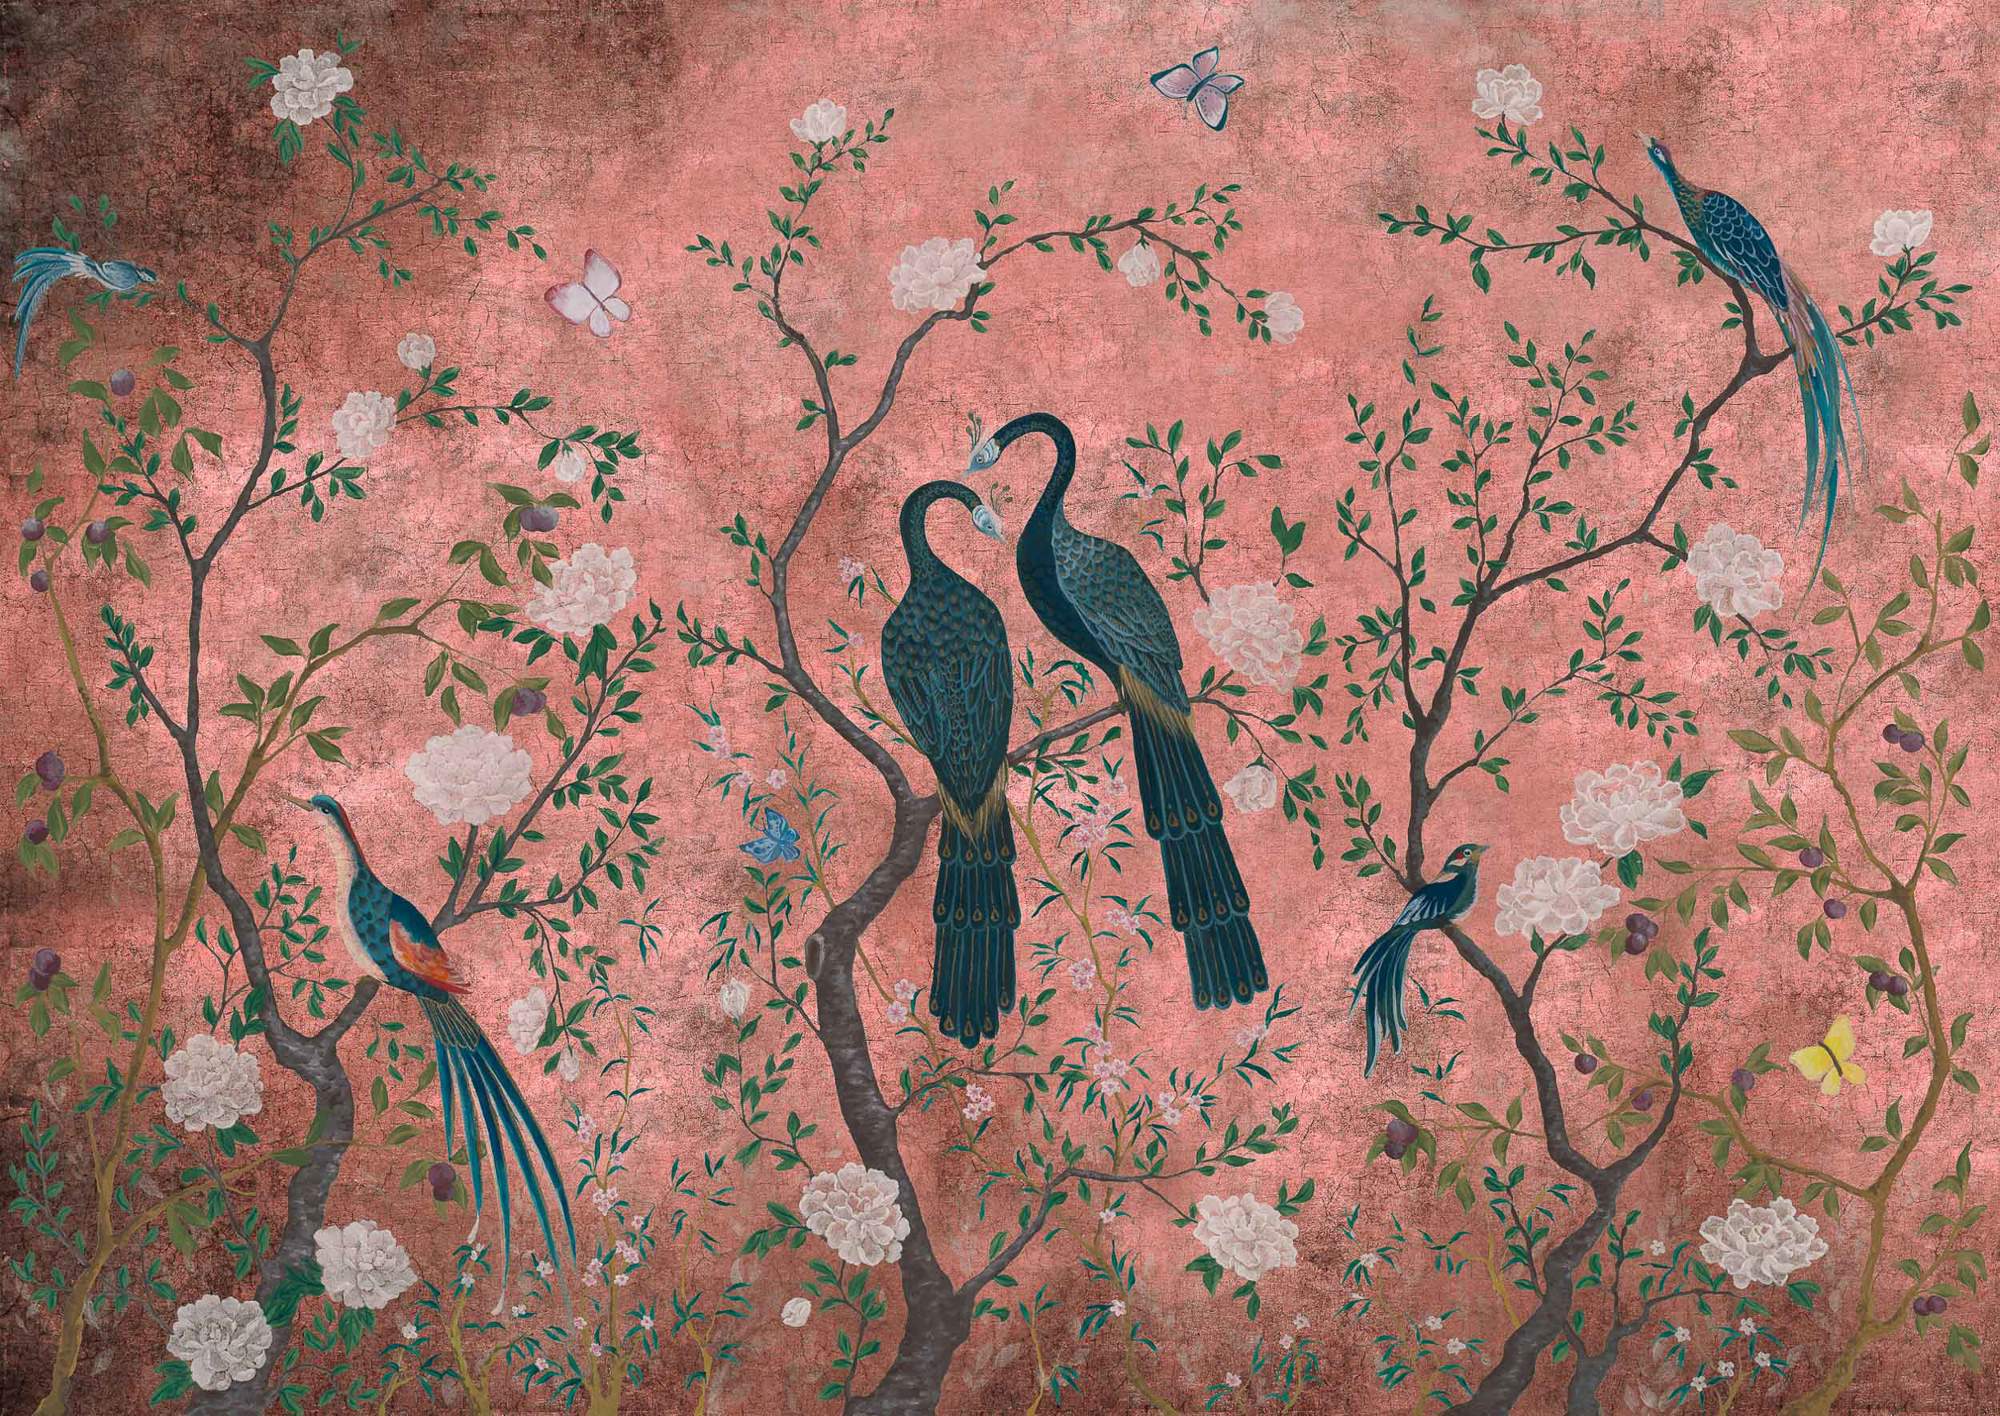 Papel pintado Edo pink mural, de Coordonné